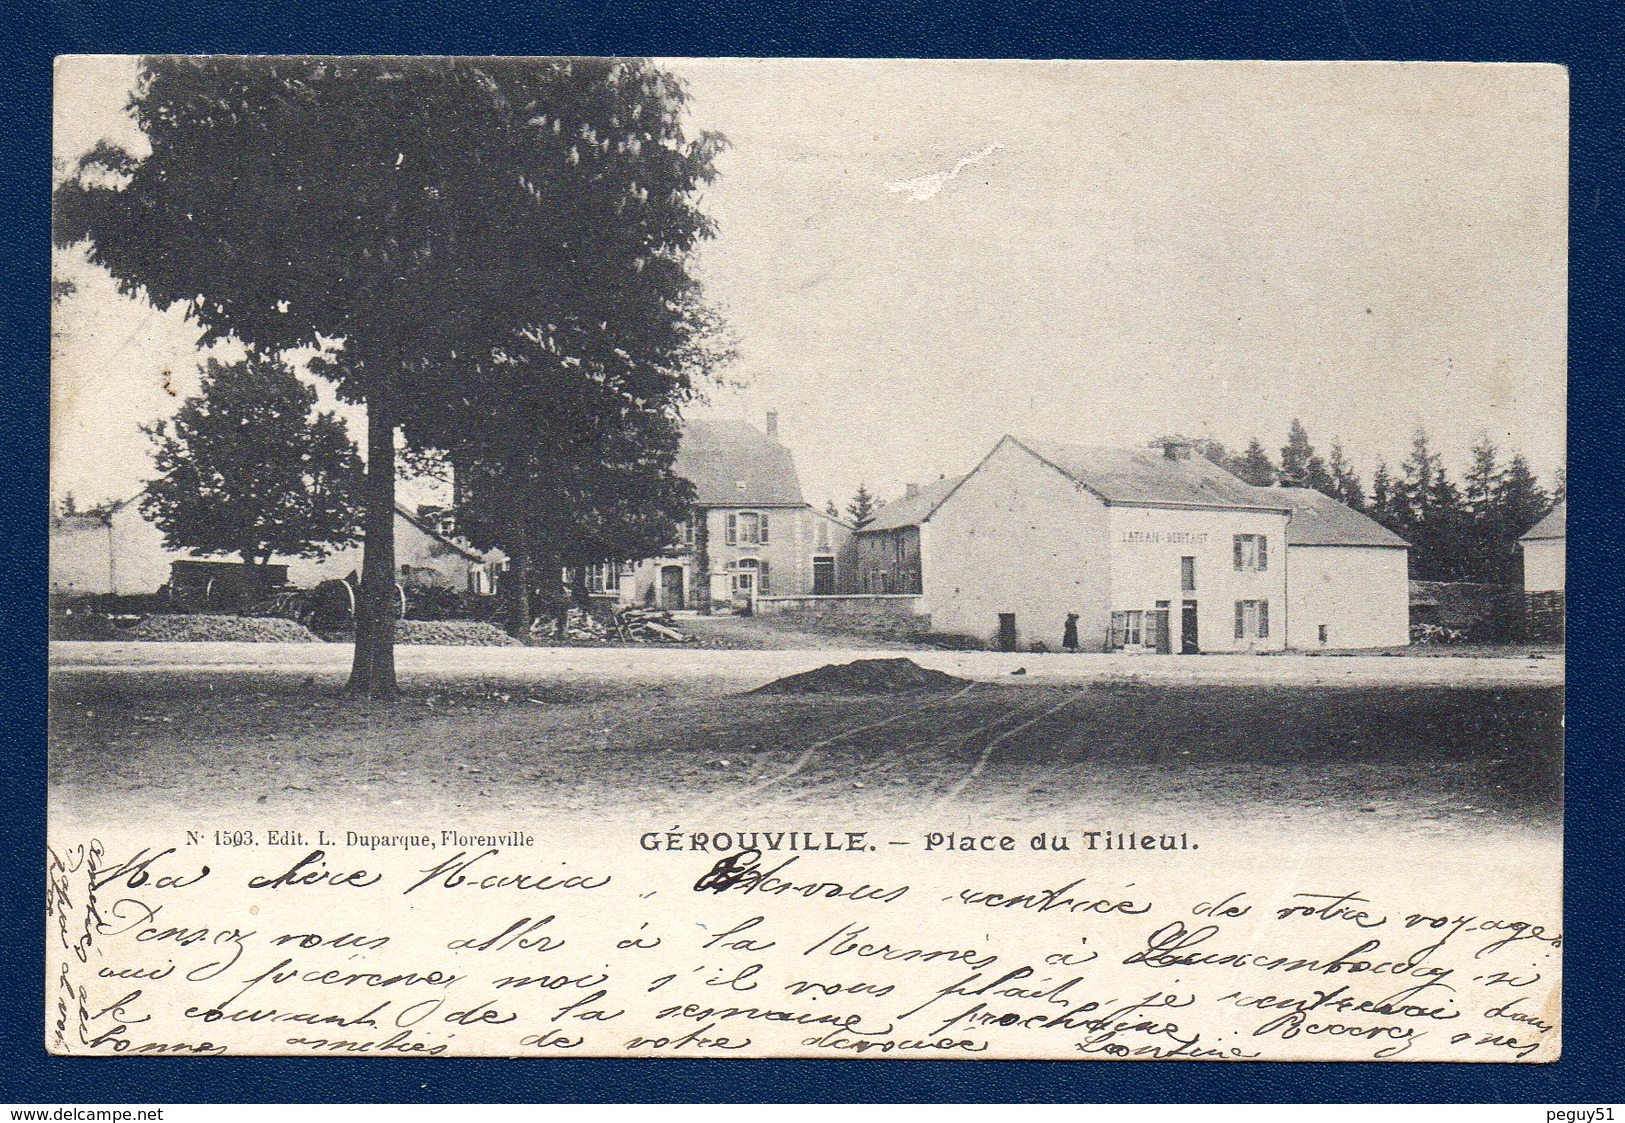 Gérouville ( Meix Devant Virton).  Place Du Tilleul. Latéan Débitant. 1904 - Meix-devant-Virton